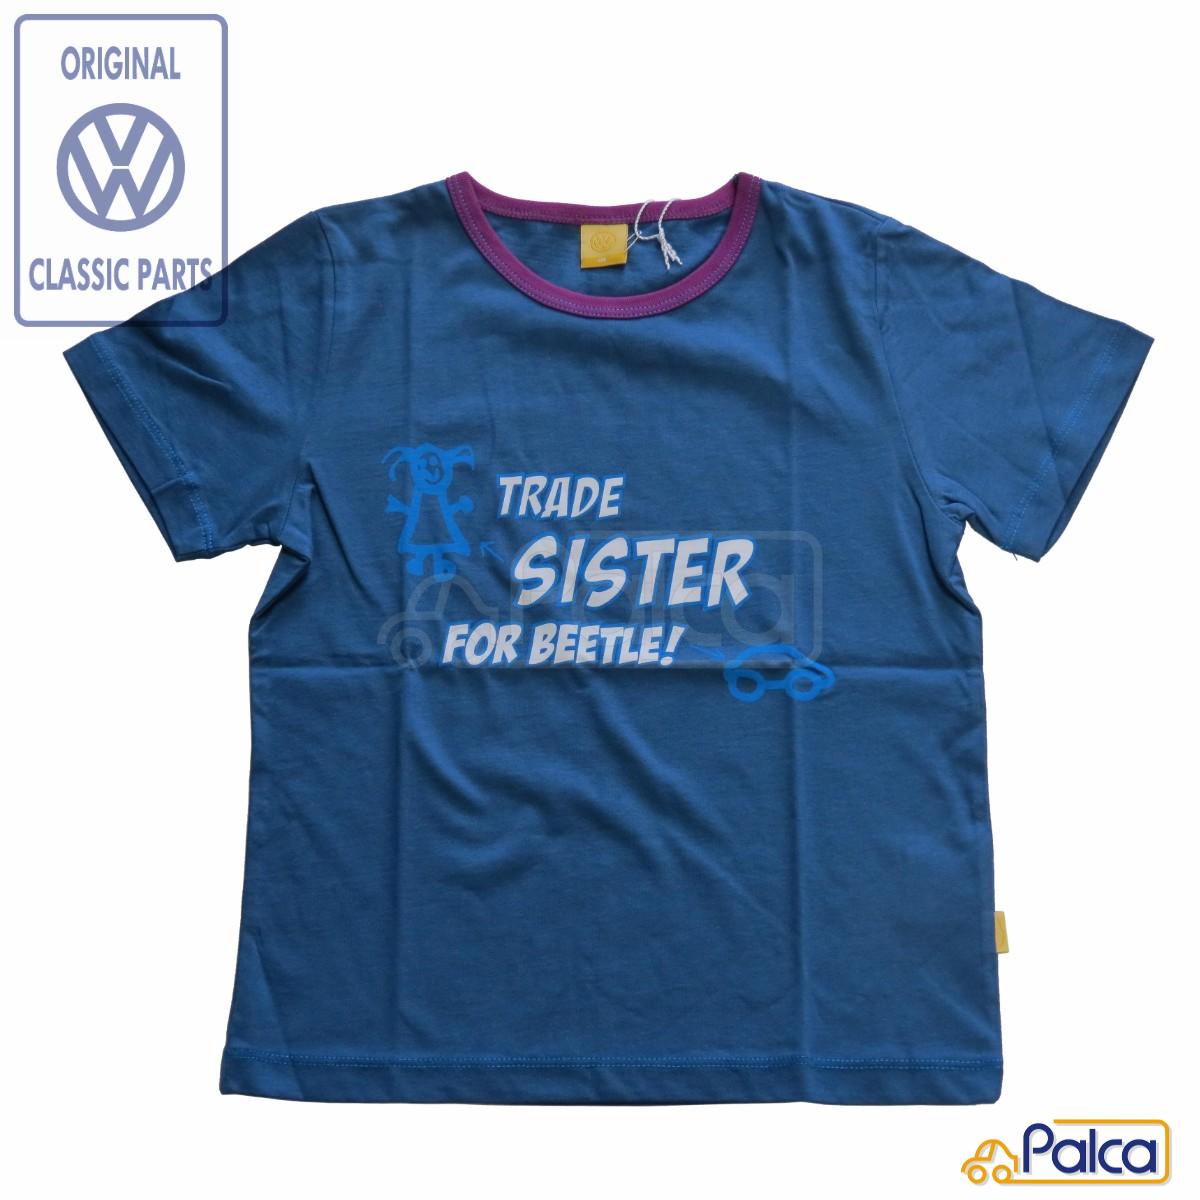 フォルクスワーゲン/VW Tシャツ/T-シャツ TRADE SISTER FOR BEETLE/ビートル サイズ116 子供/キッズ用 ..